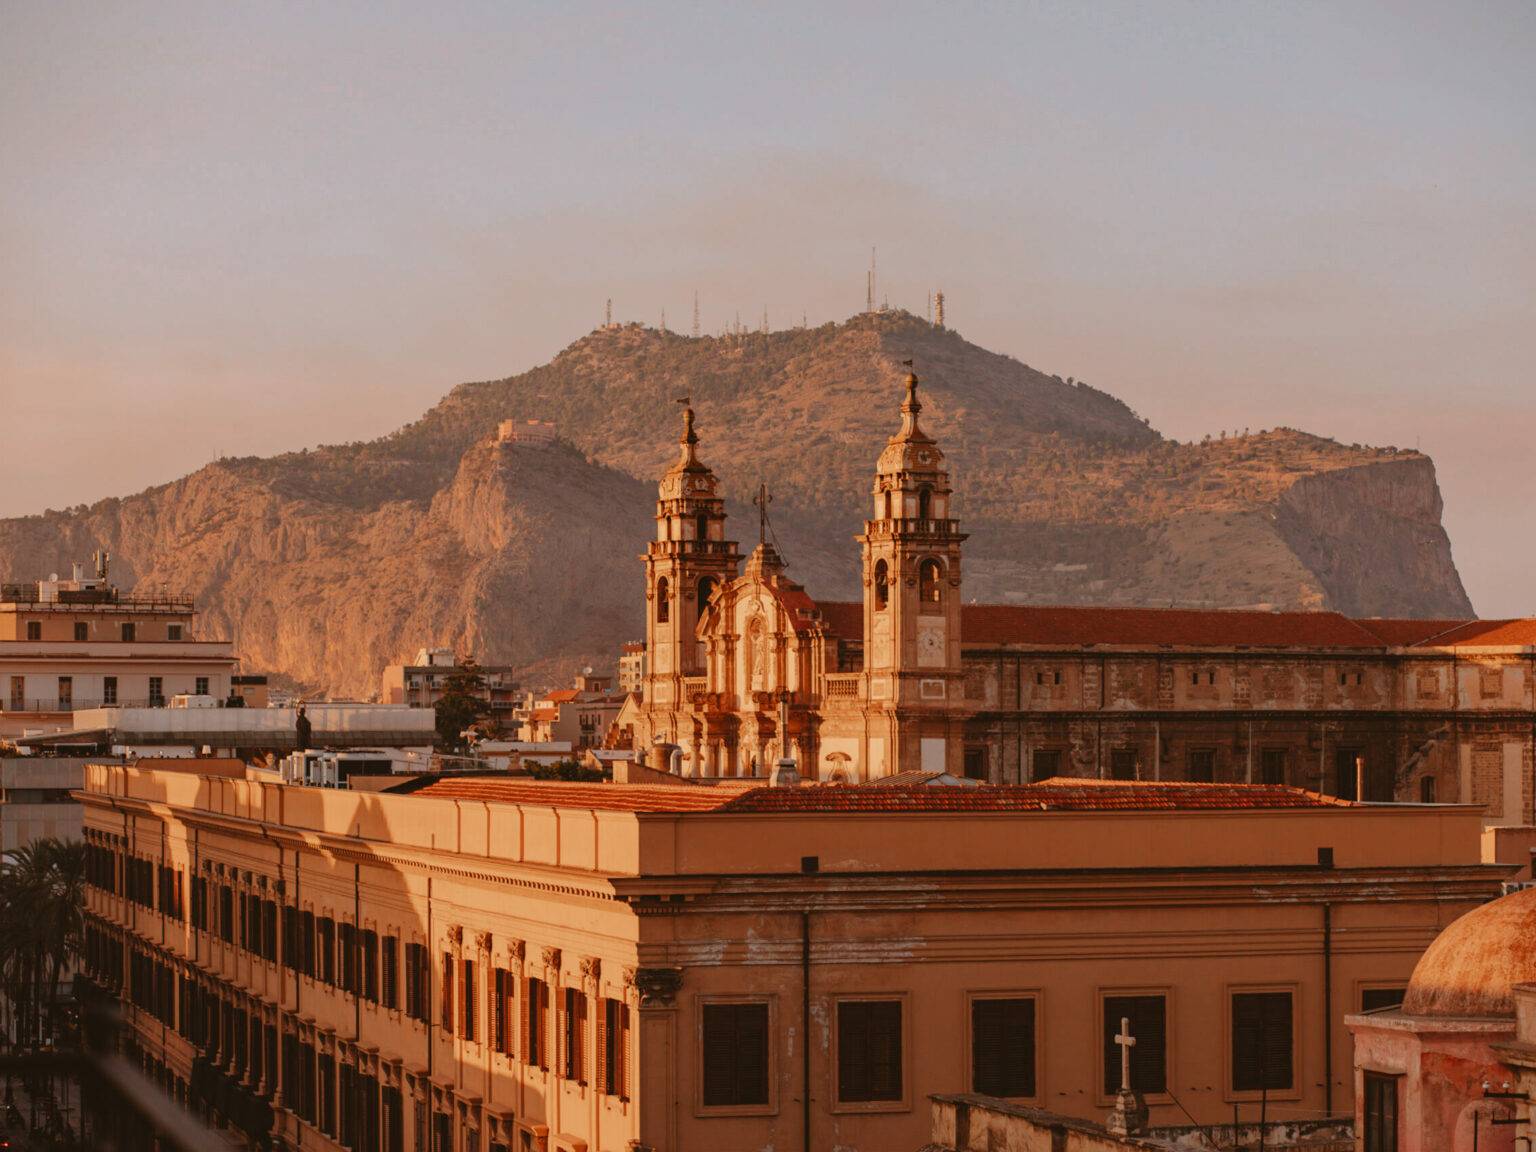 Die Dächer der Altstadt Palermo, im Hintergrund sieht man das Gebirge.